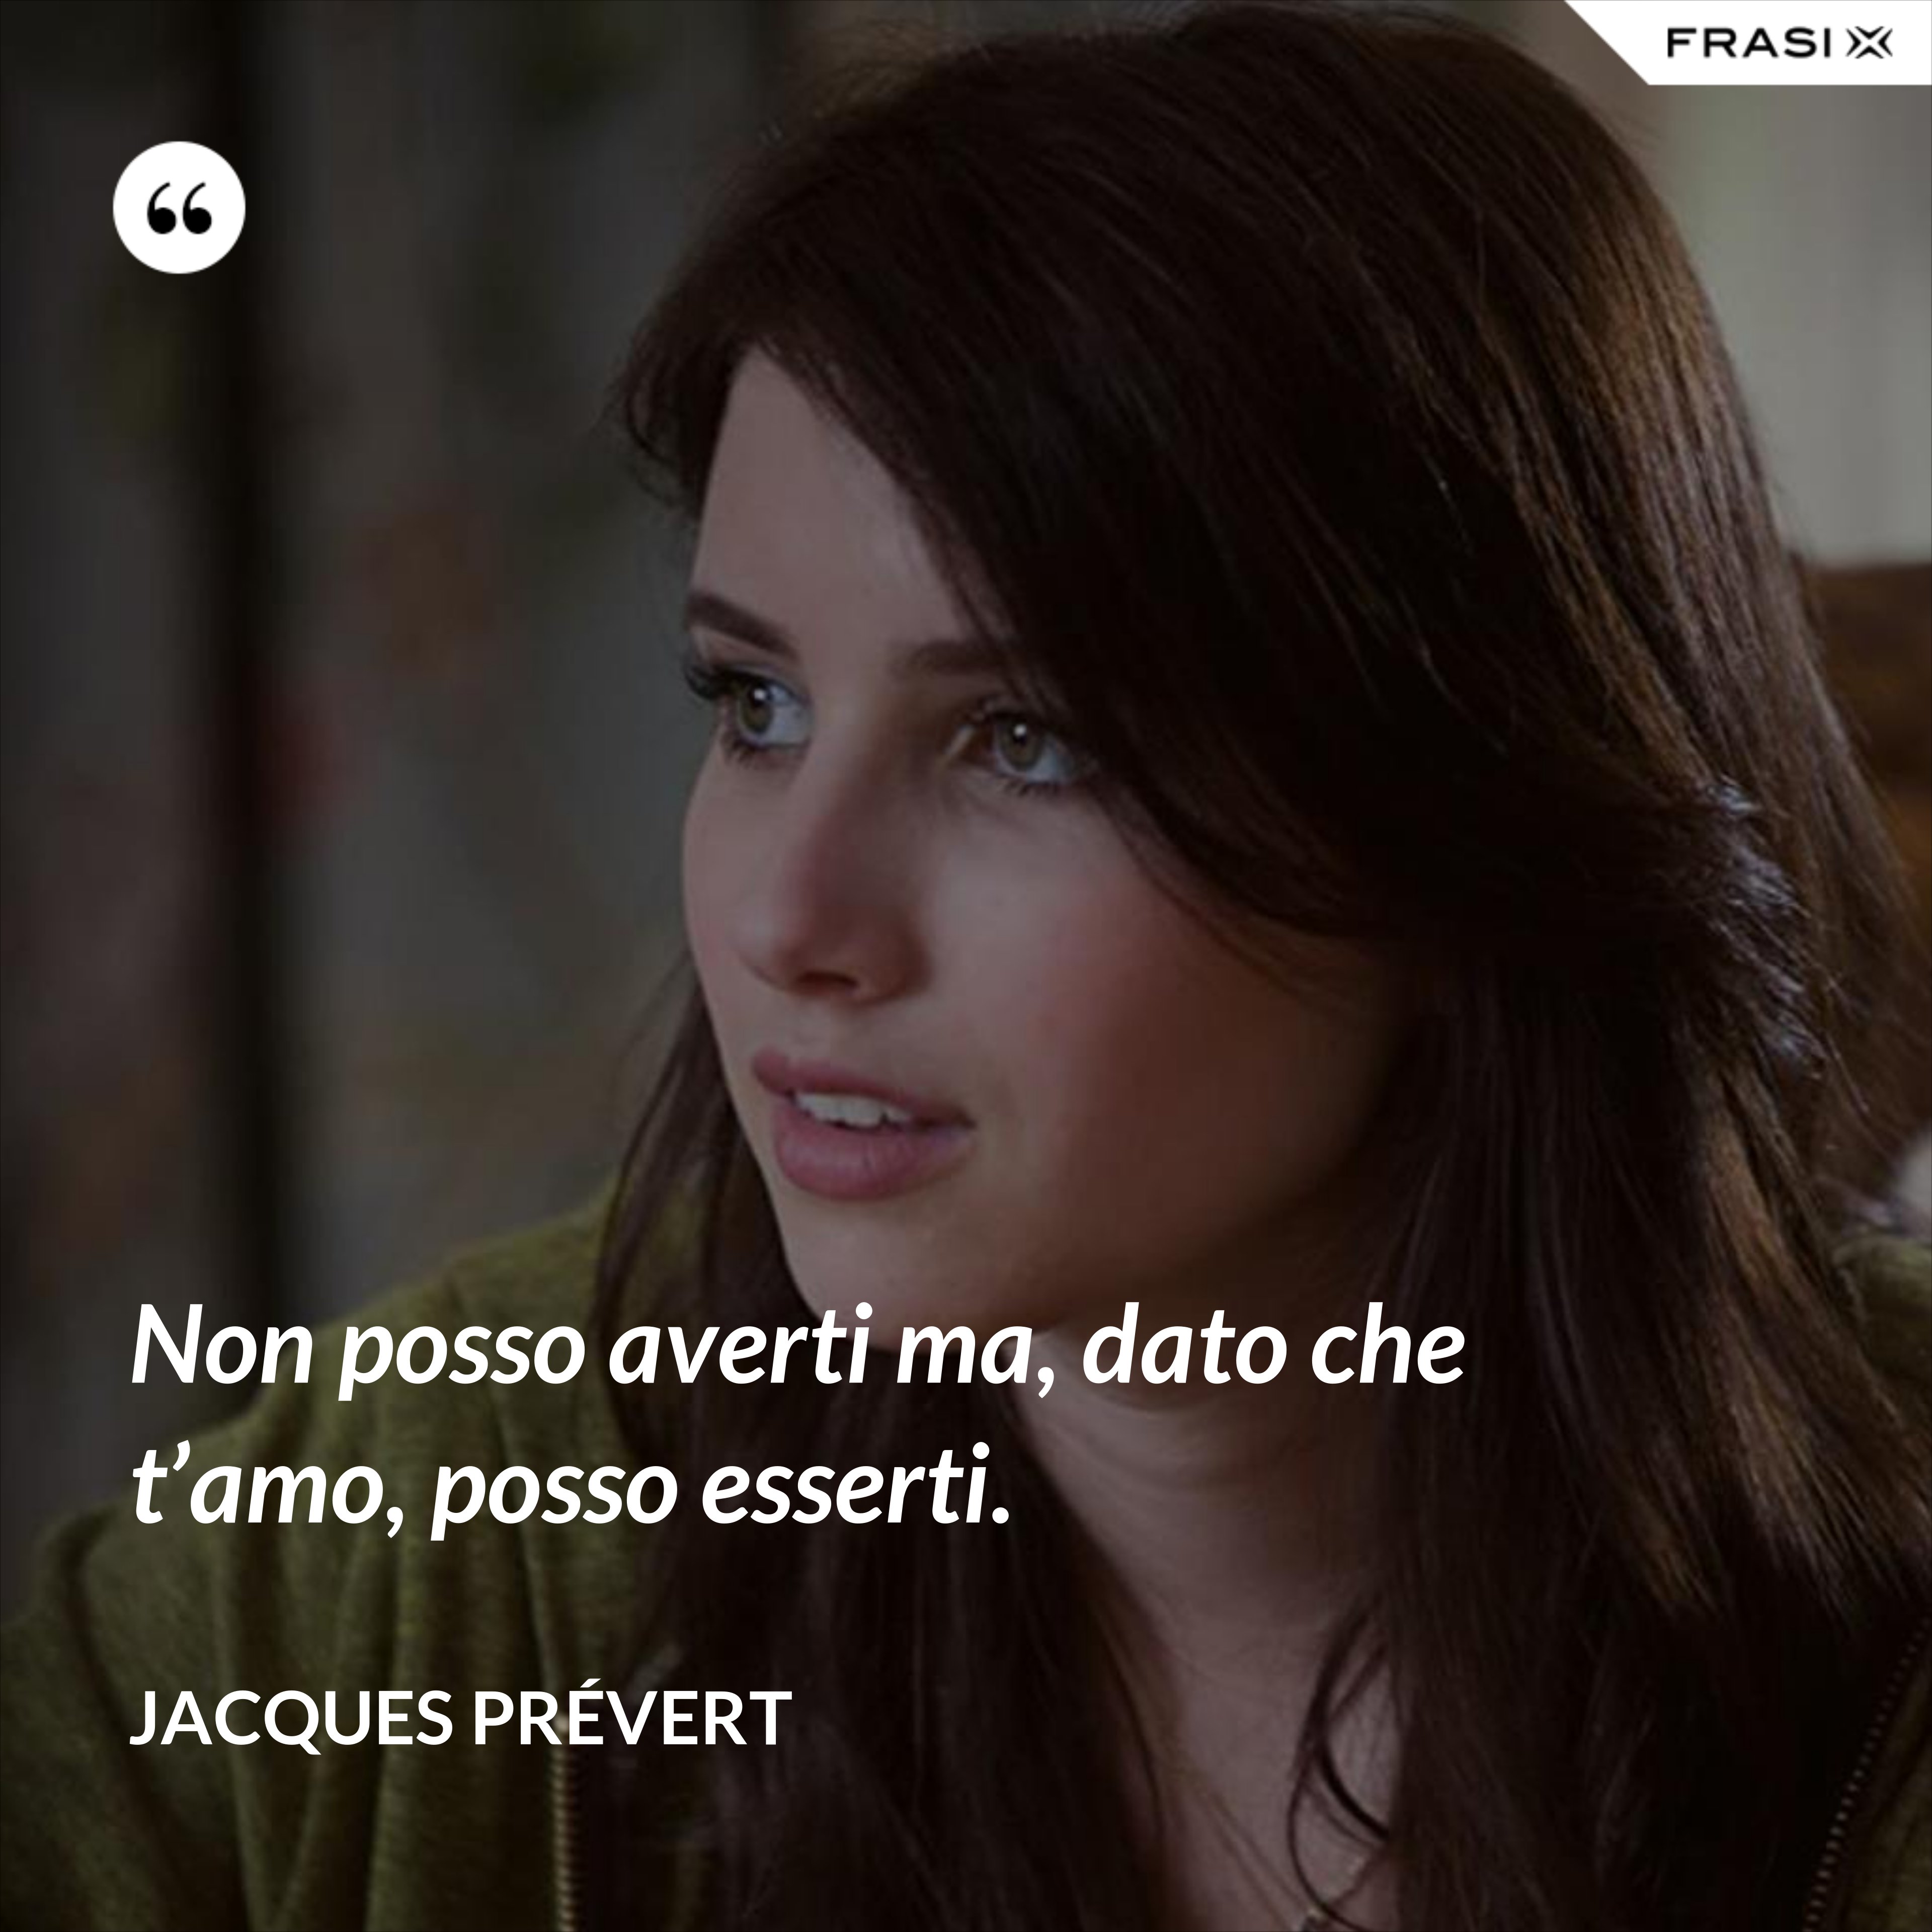 Non posso averti ma, dato che t’amo, posso esserti. - Jacques Prévert